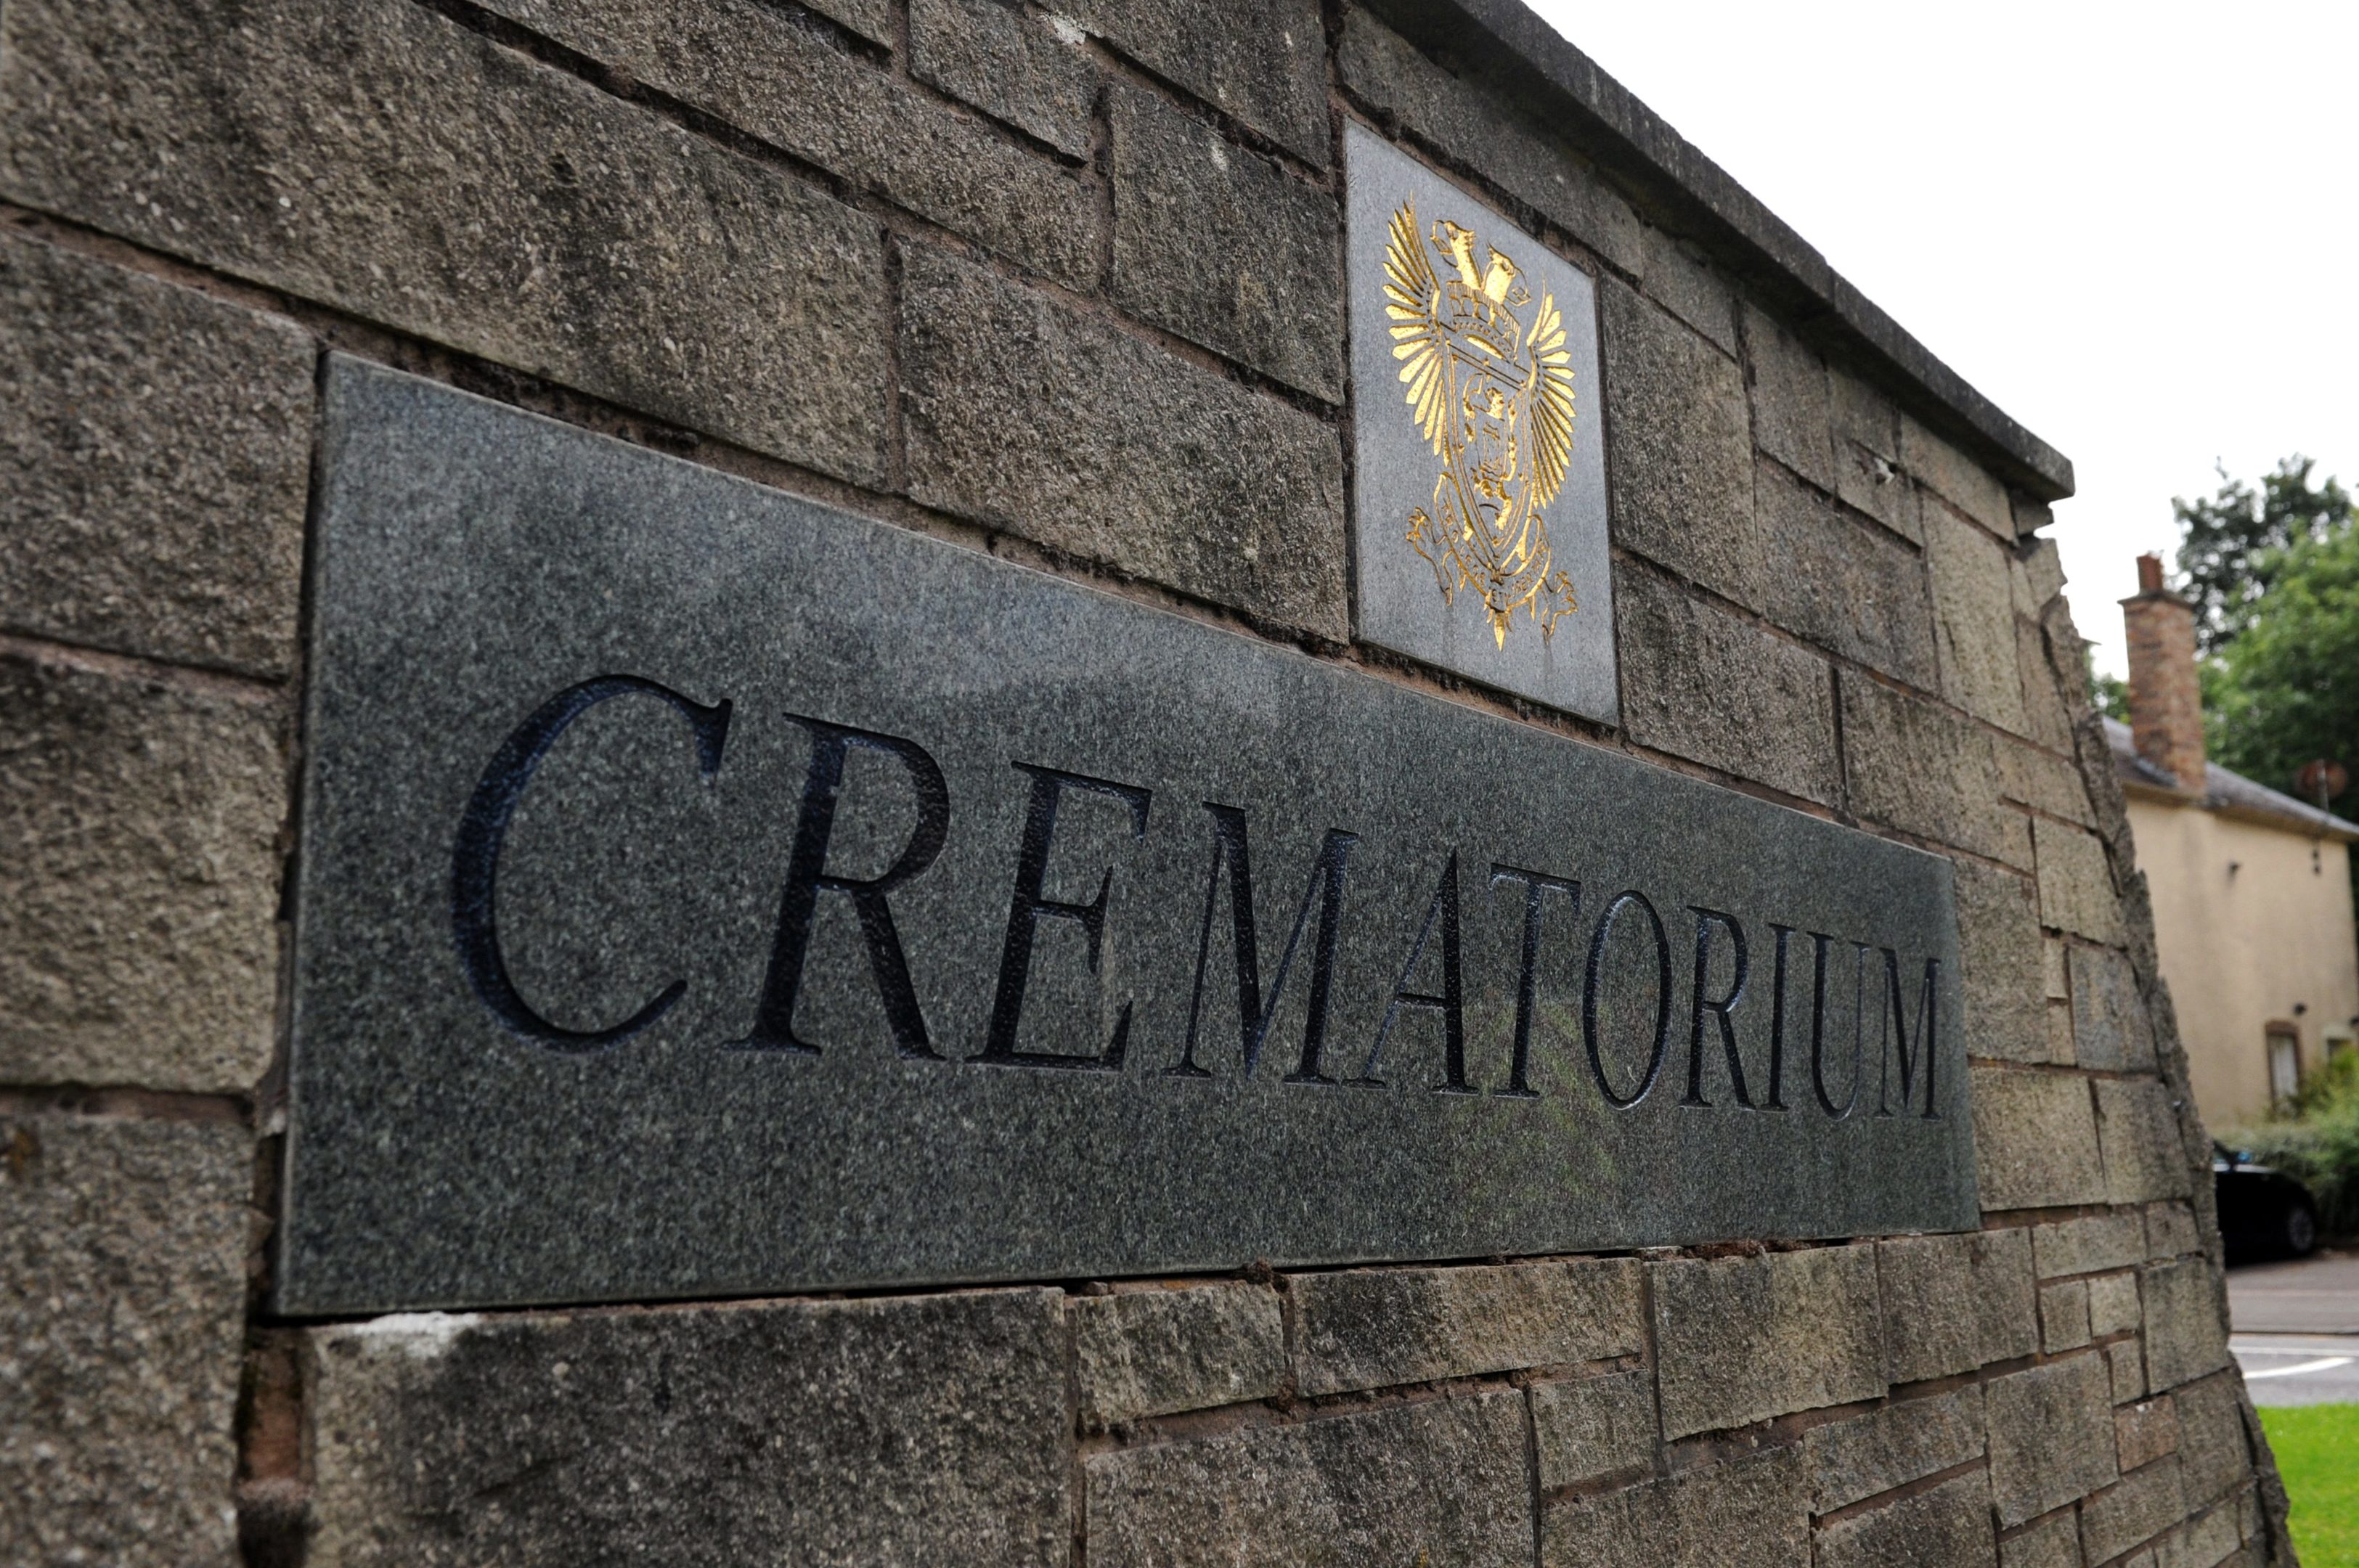 Perth Crematorium.